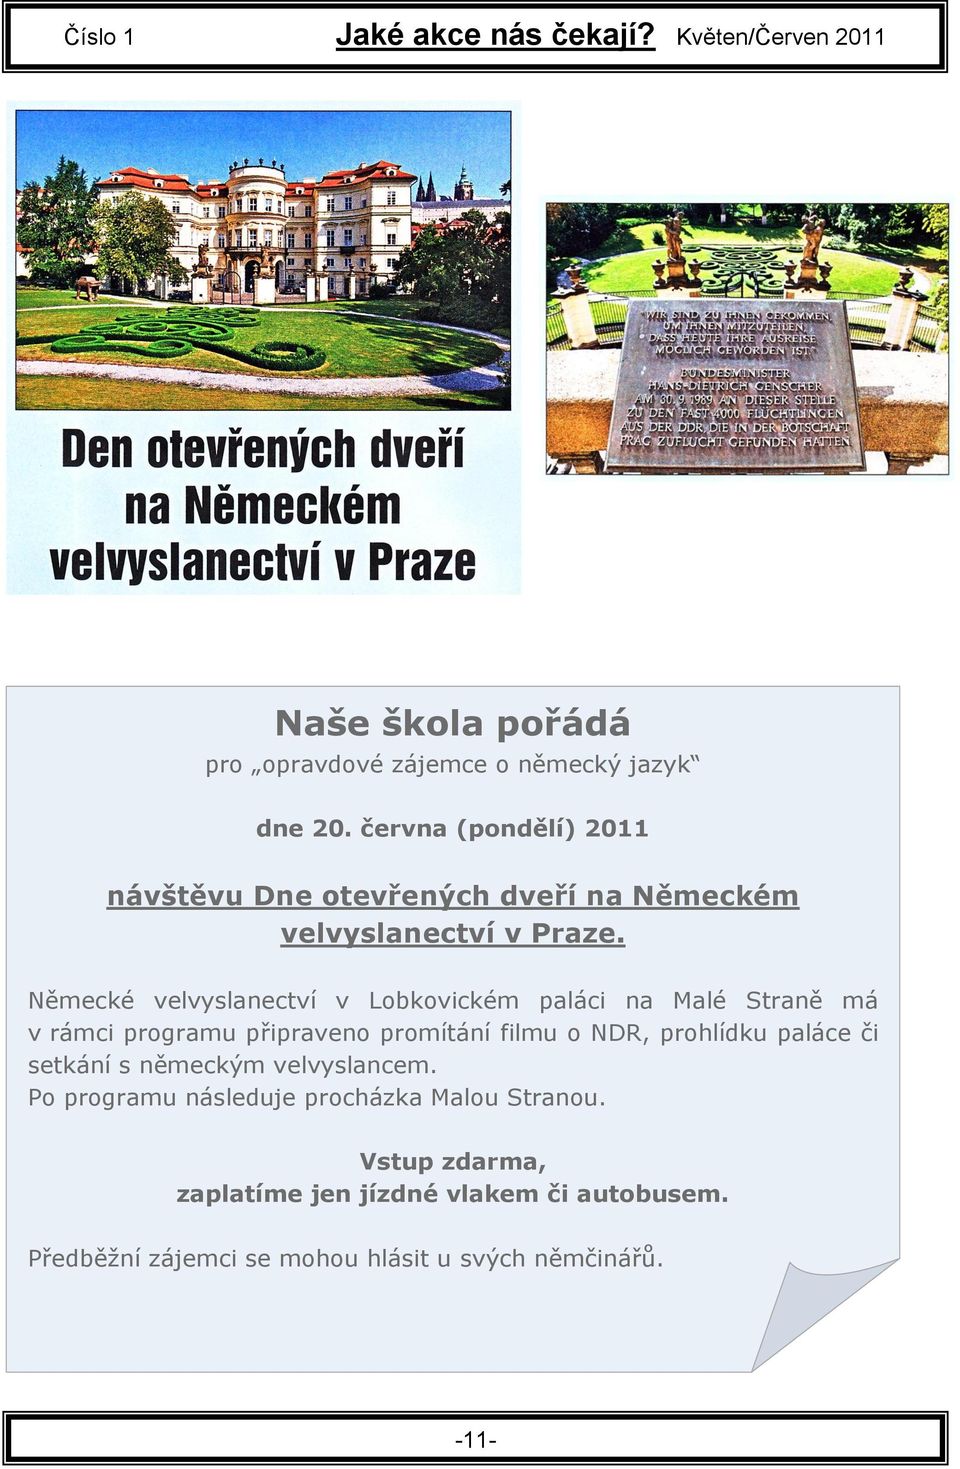 Německé velvyslanectví v Lobkovickém paláci na Malé Straně má v rámci programu připraveno promítání filmu o NDR, prohlídku paláce